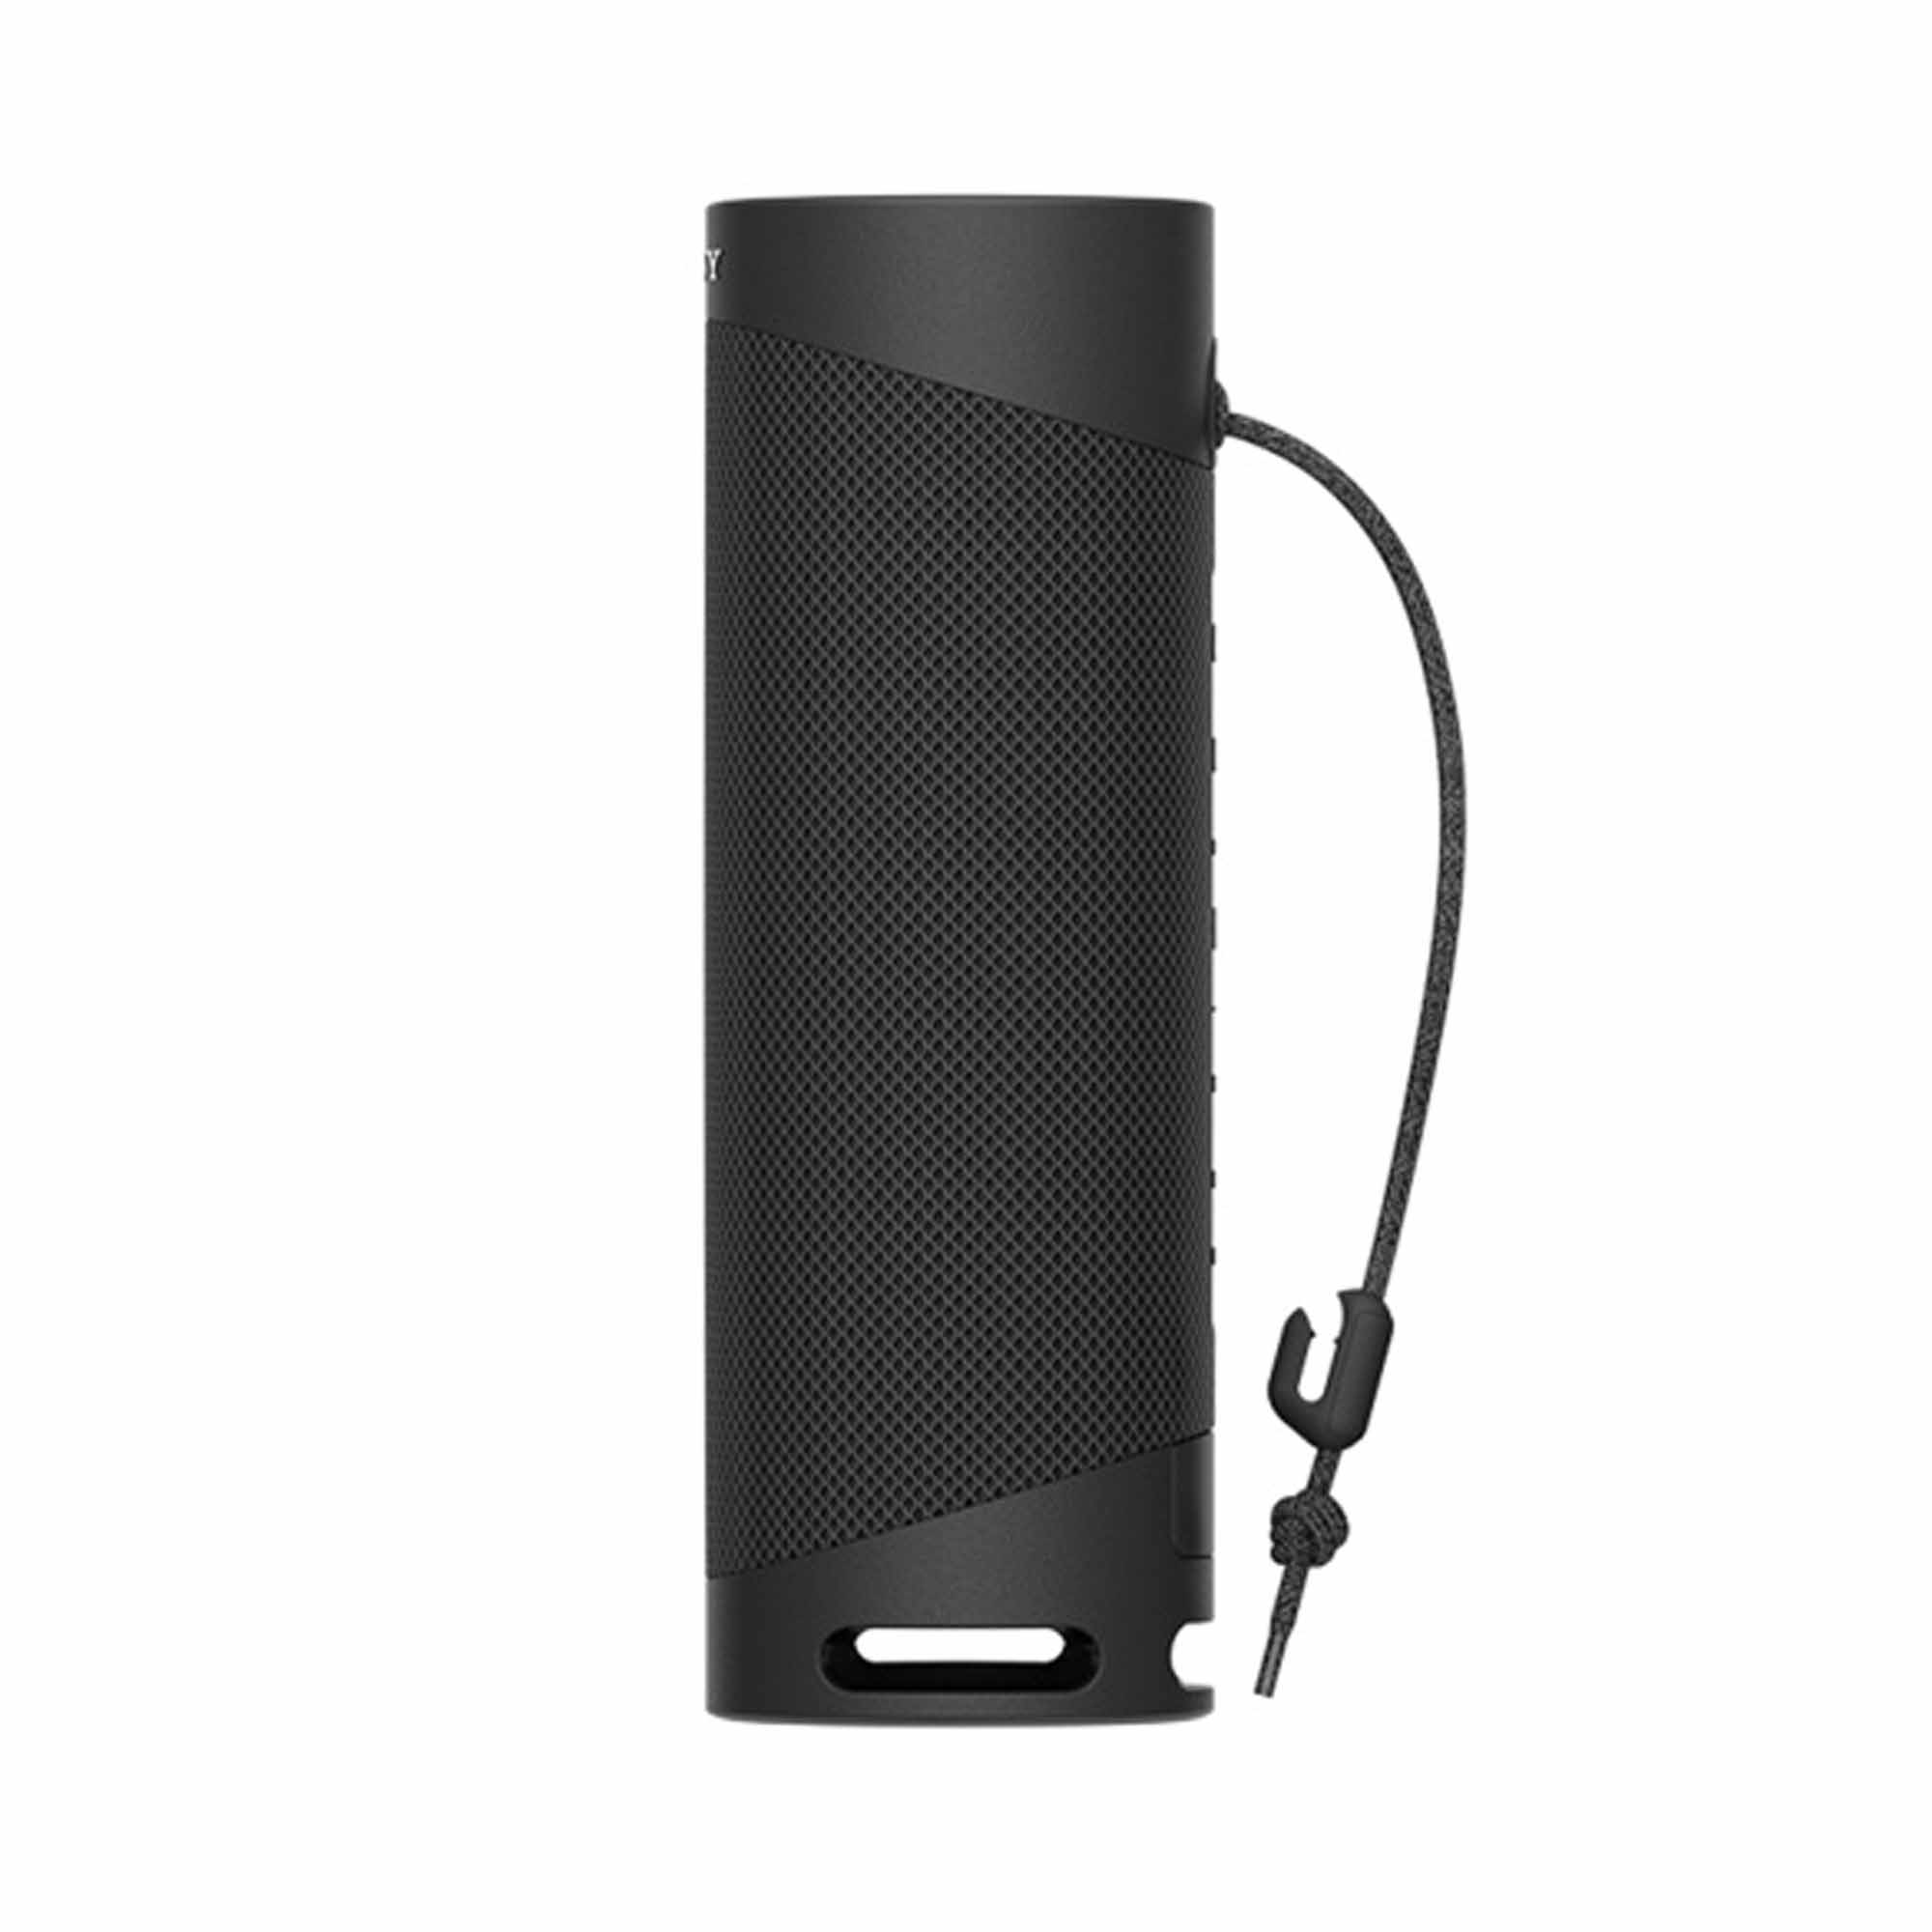 Sony - Altavoz Bluetooth portátil - Negro (renovado)